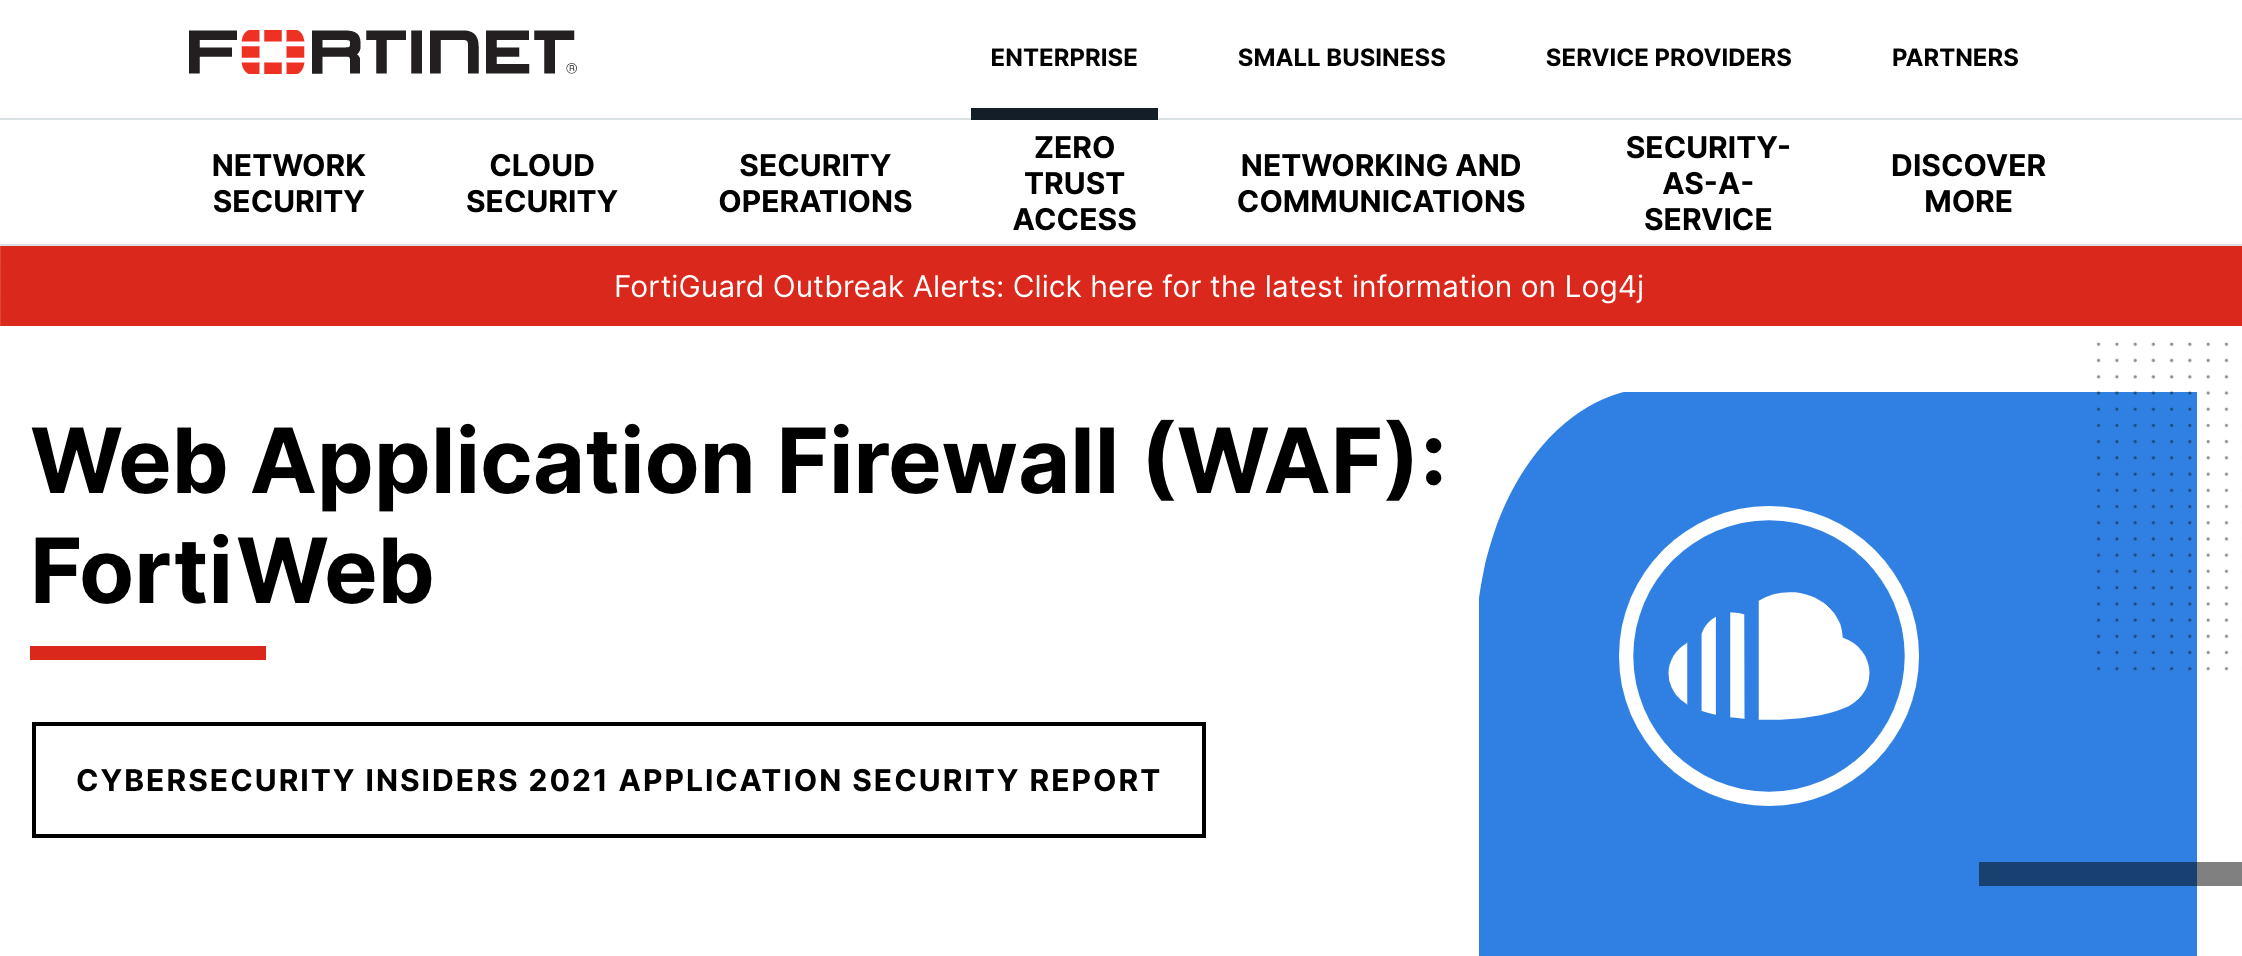 WAF vs. Firewall: Web Application & Network Firewalls